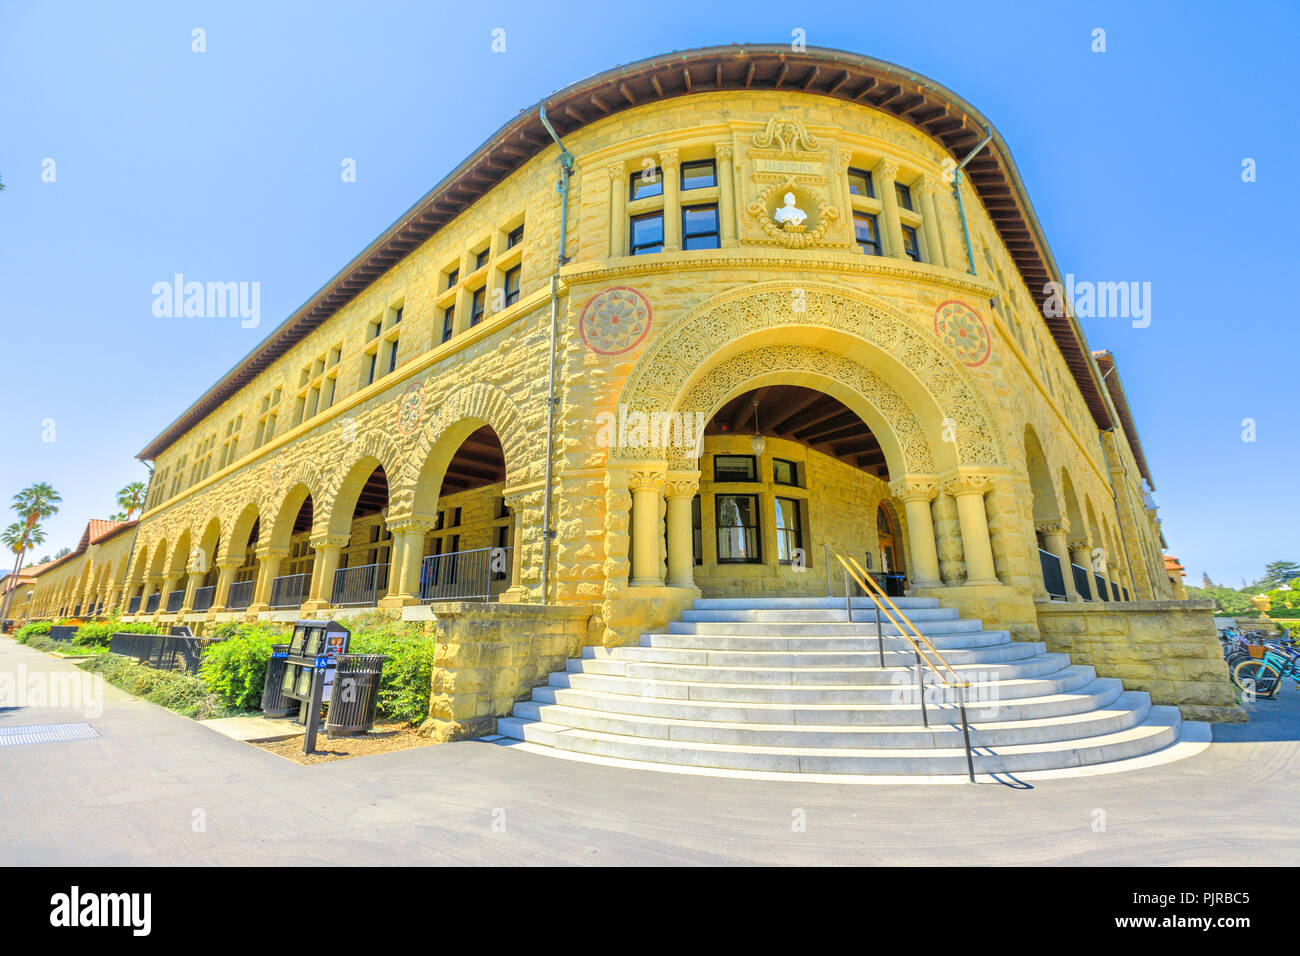 Palo Alto, Kalifornien, USA - 13. August 2018: Pigott Hall am Campus der Stanford University, einer der renommiertesten Universitäten der Welt, im Silicon Valley, San Francisco Bay Area. Stockfoto